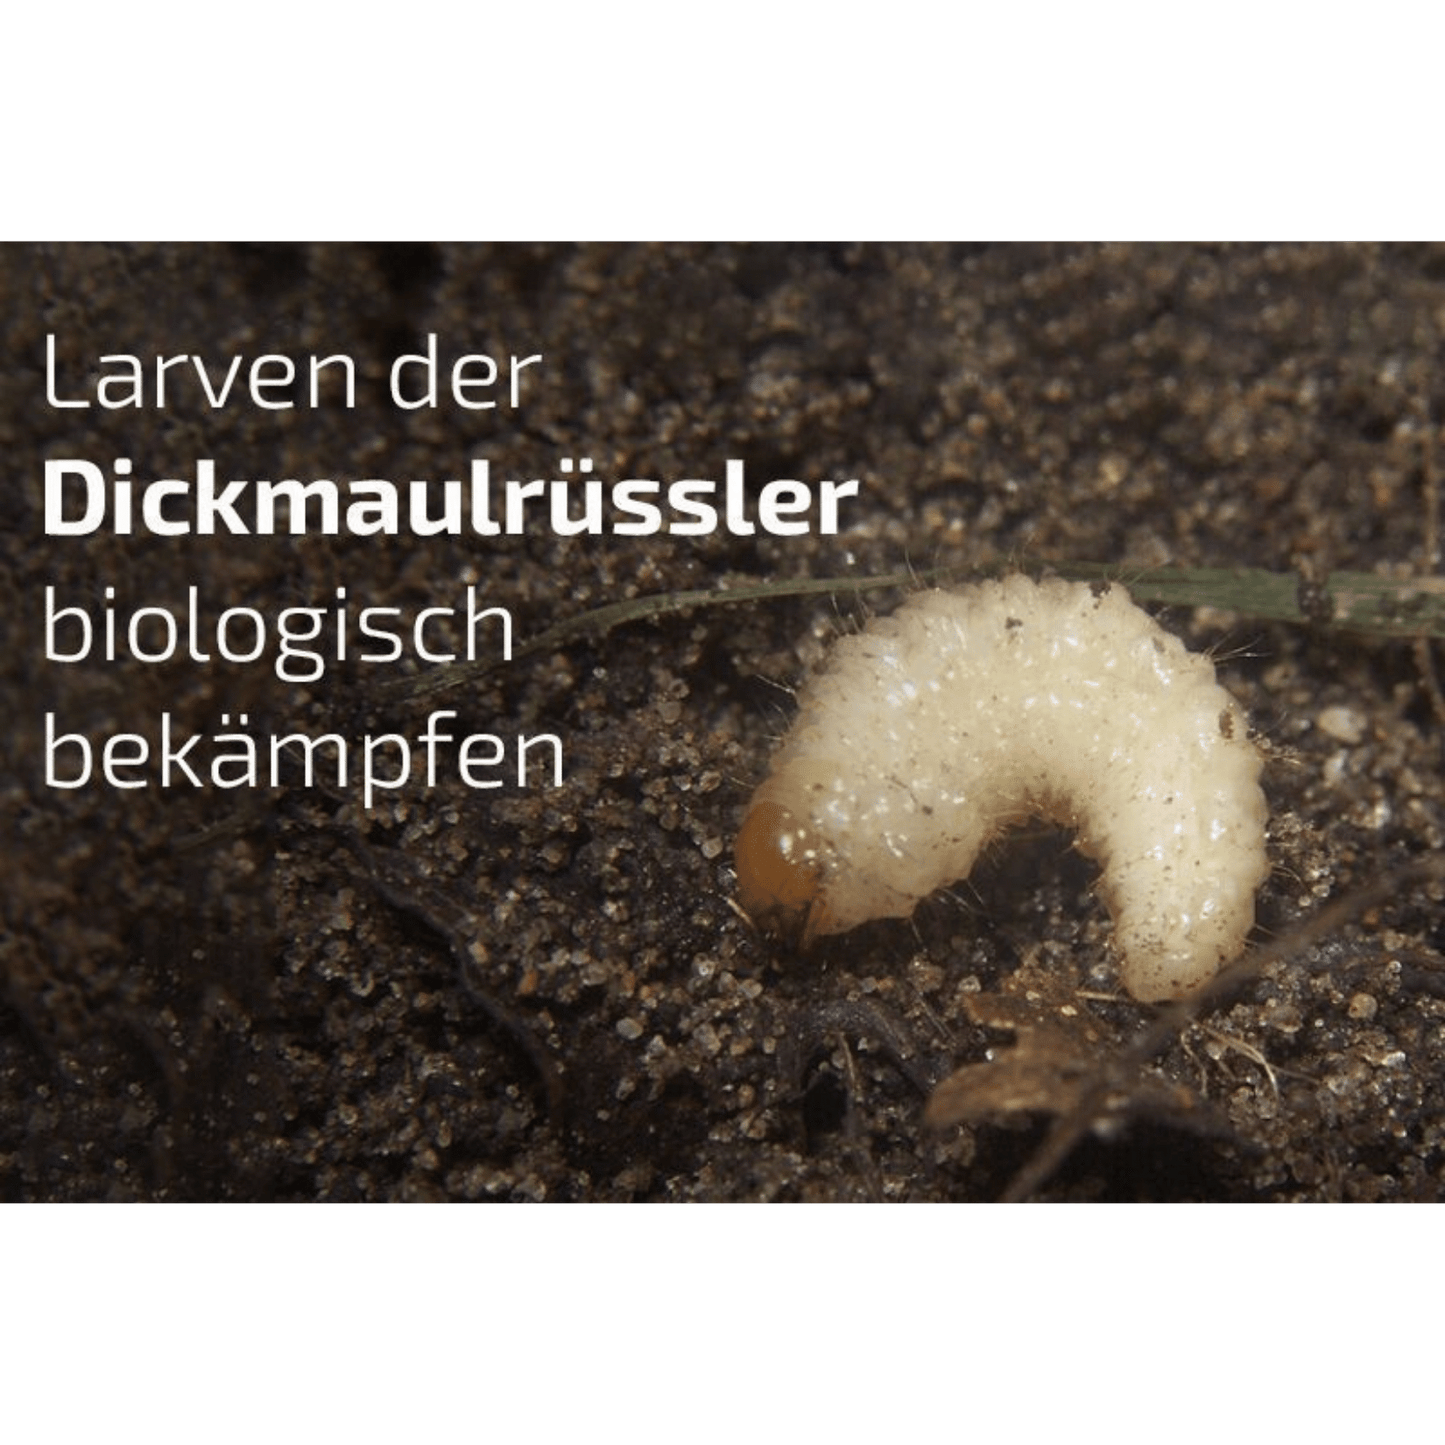 Nematop - Nematoden gegen Dickmaulrüssler - Pfl.Reg.Nr. 2730